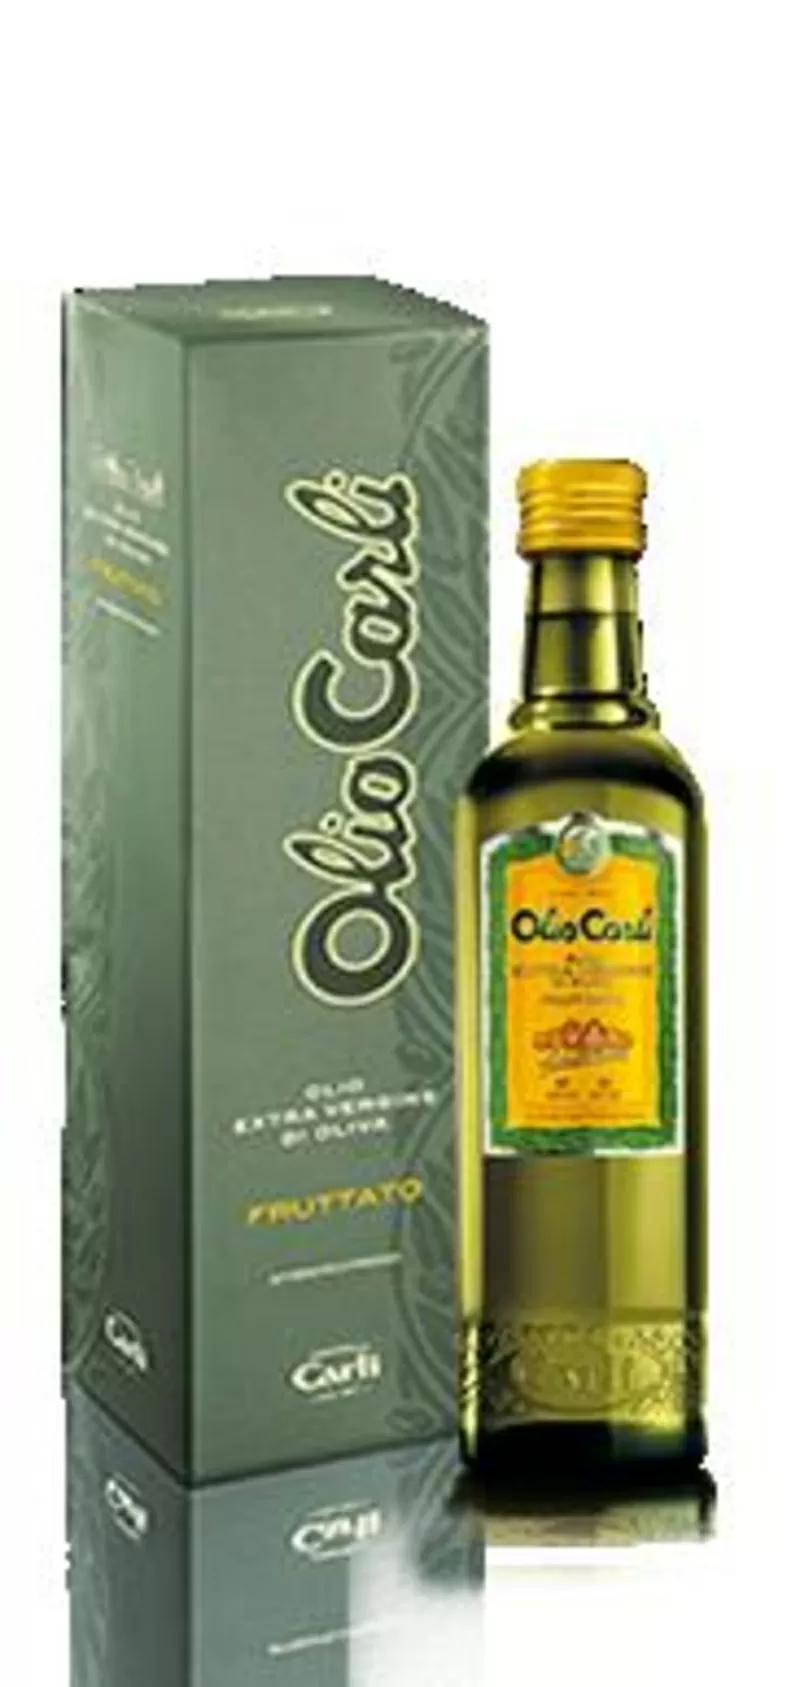 итальянское оливковое масло 2